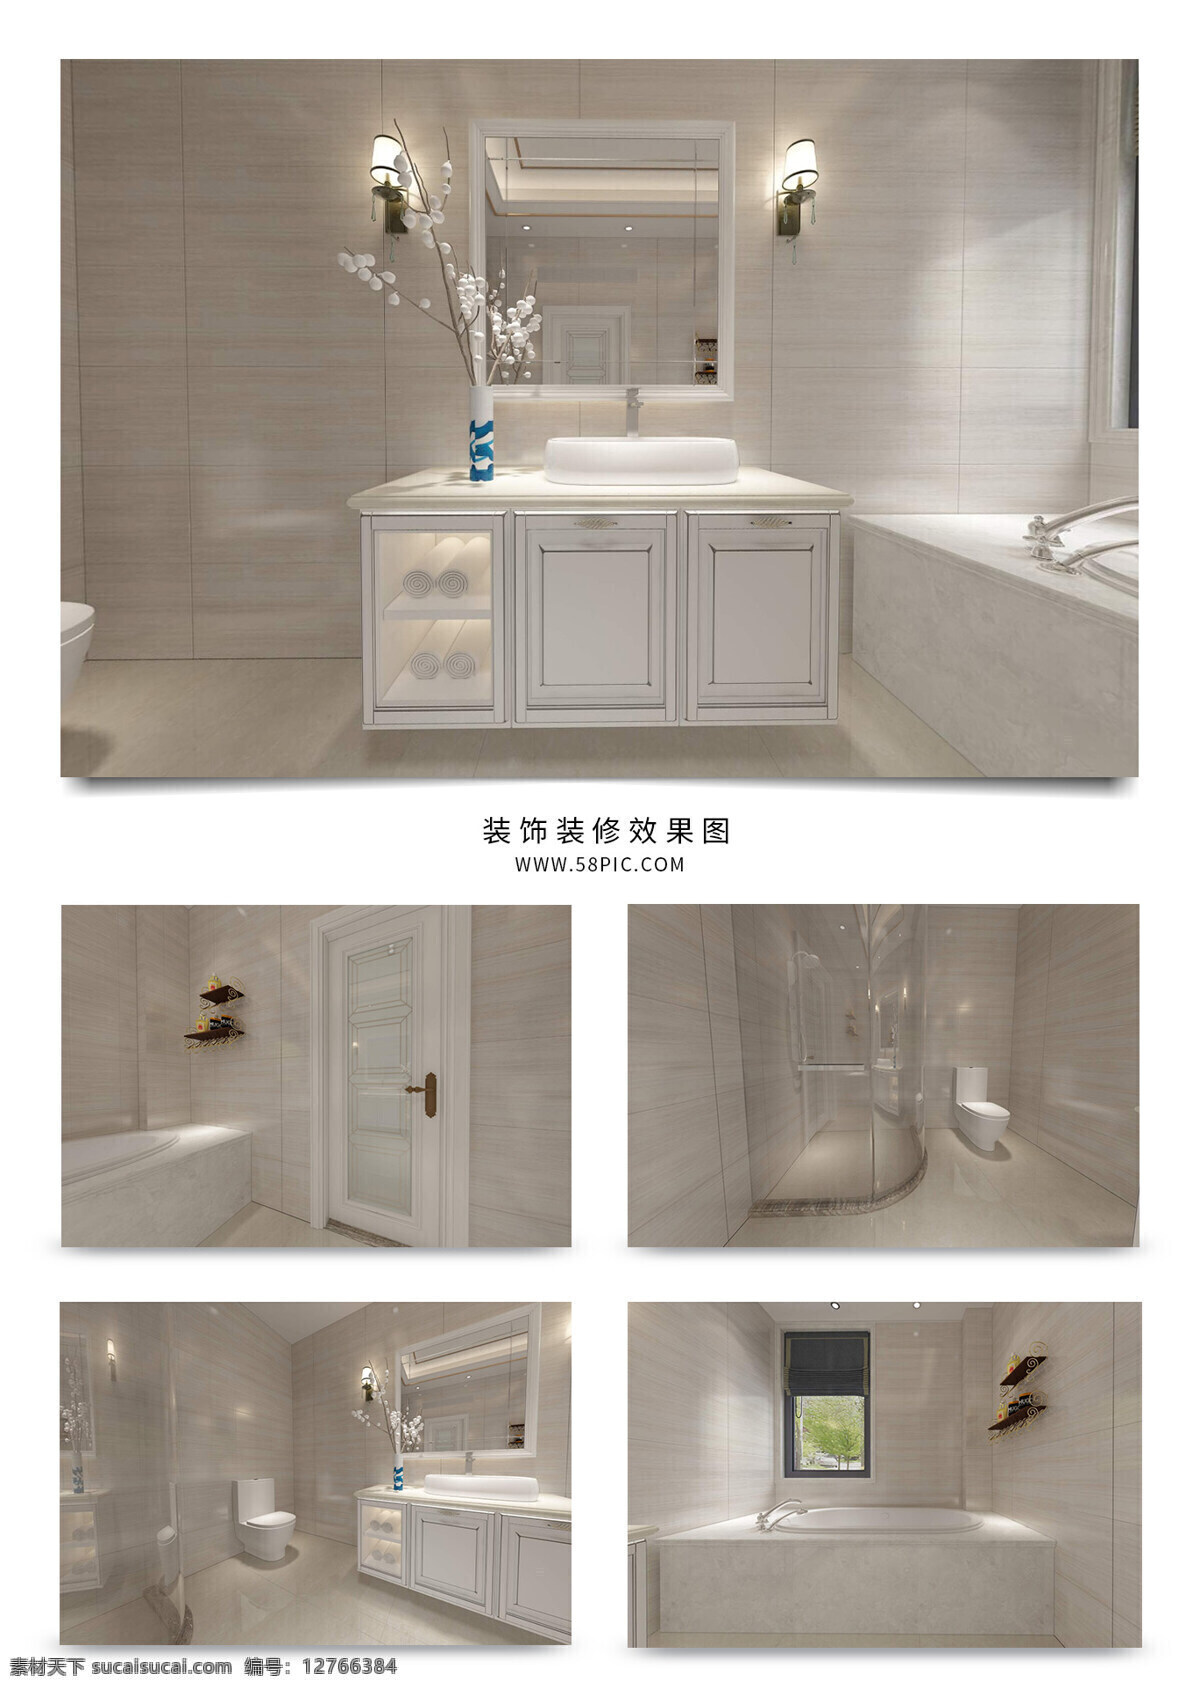 白色 简 欧风 浴室 卫生间 家装 效果图 简欧卫生间 简欧 欧式 卫生间效果图 简约